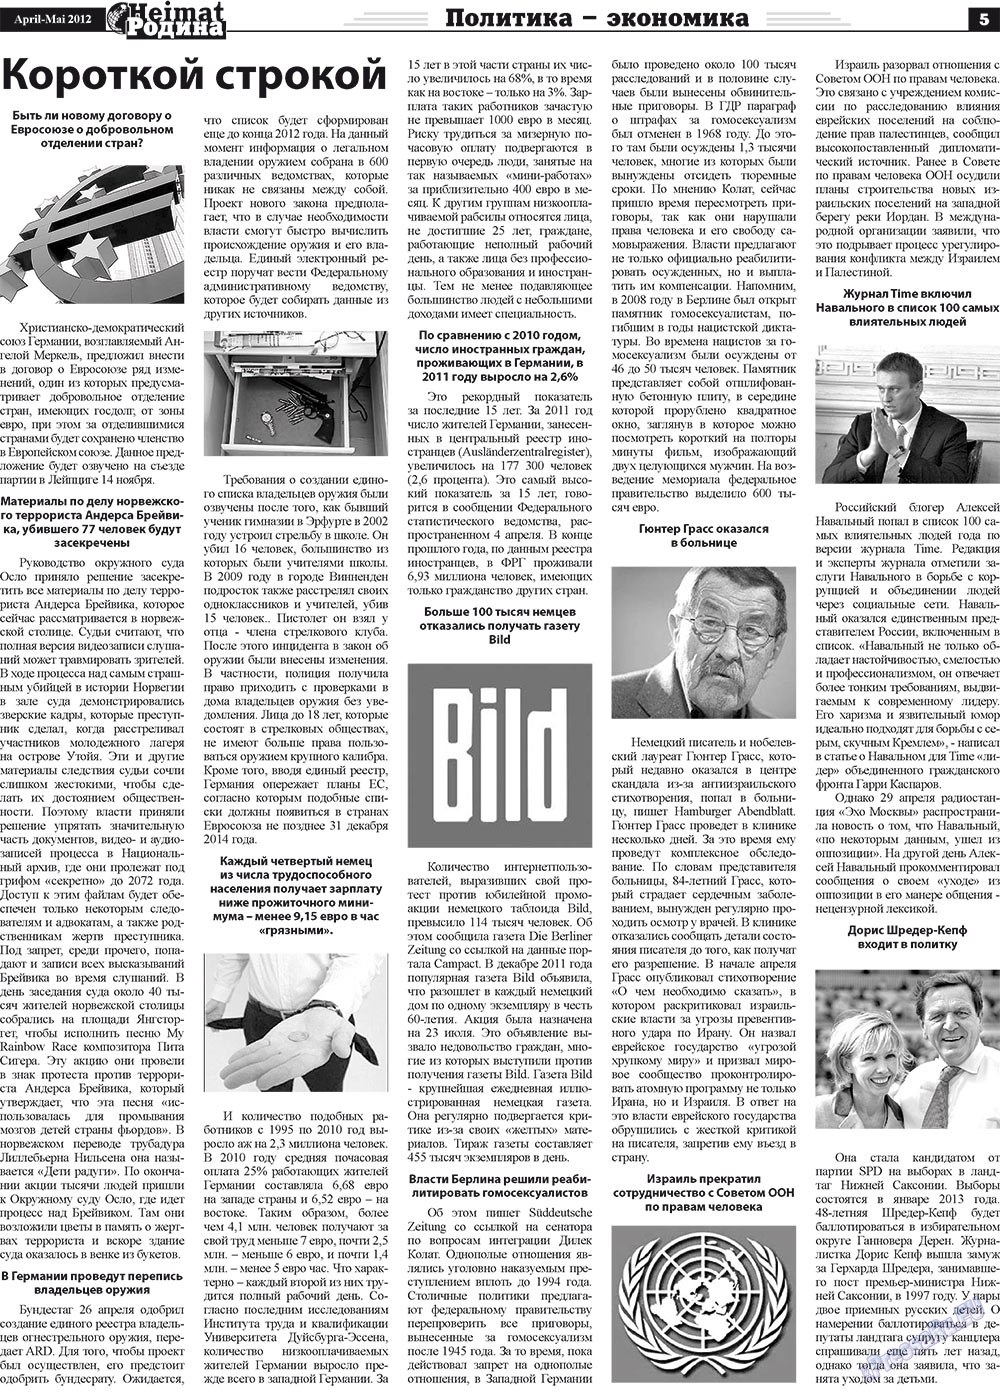 Heimat-Родина (газета). 2012 год, номер 4, стр. 5